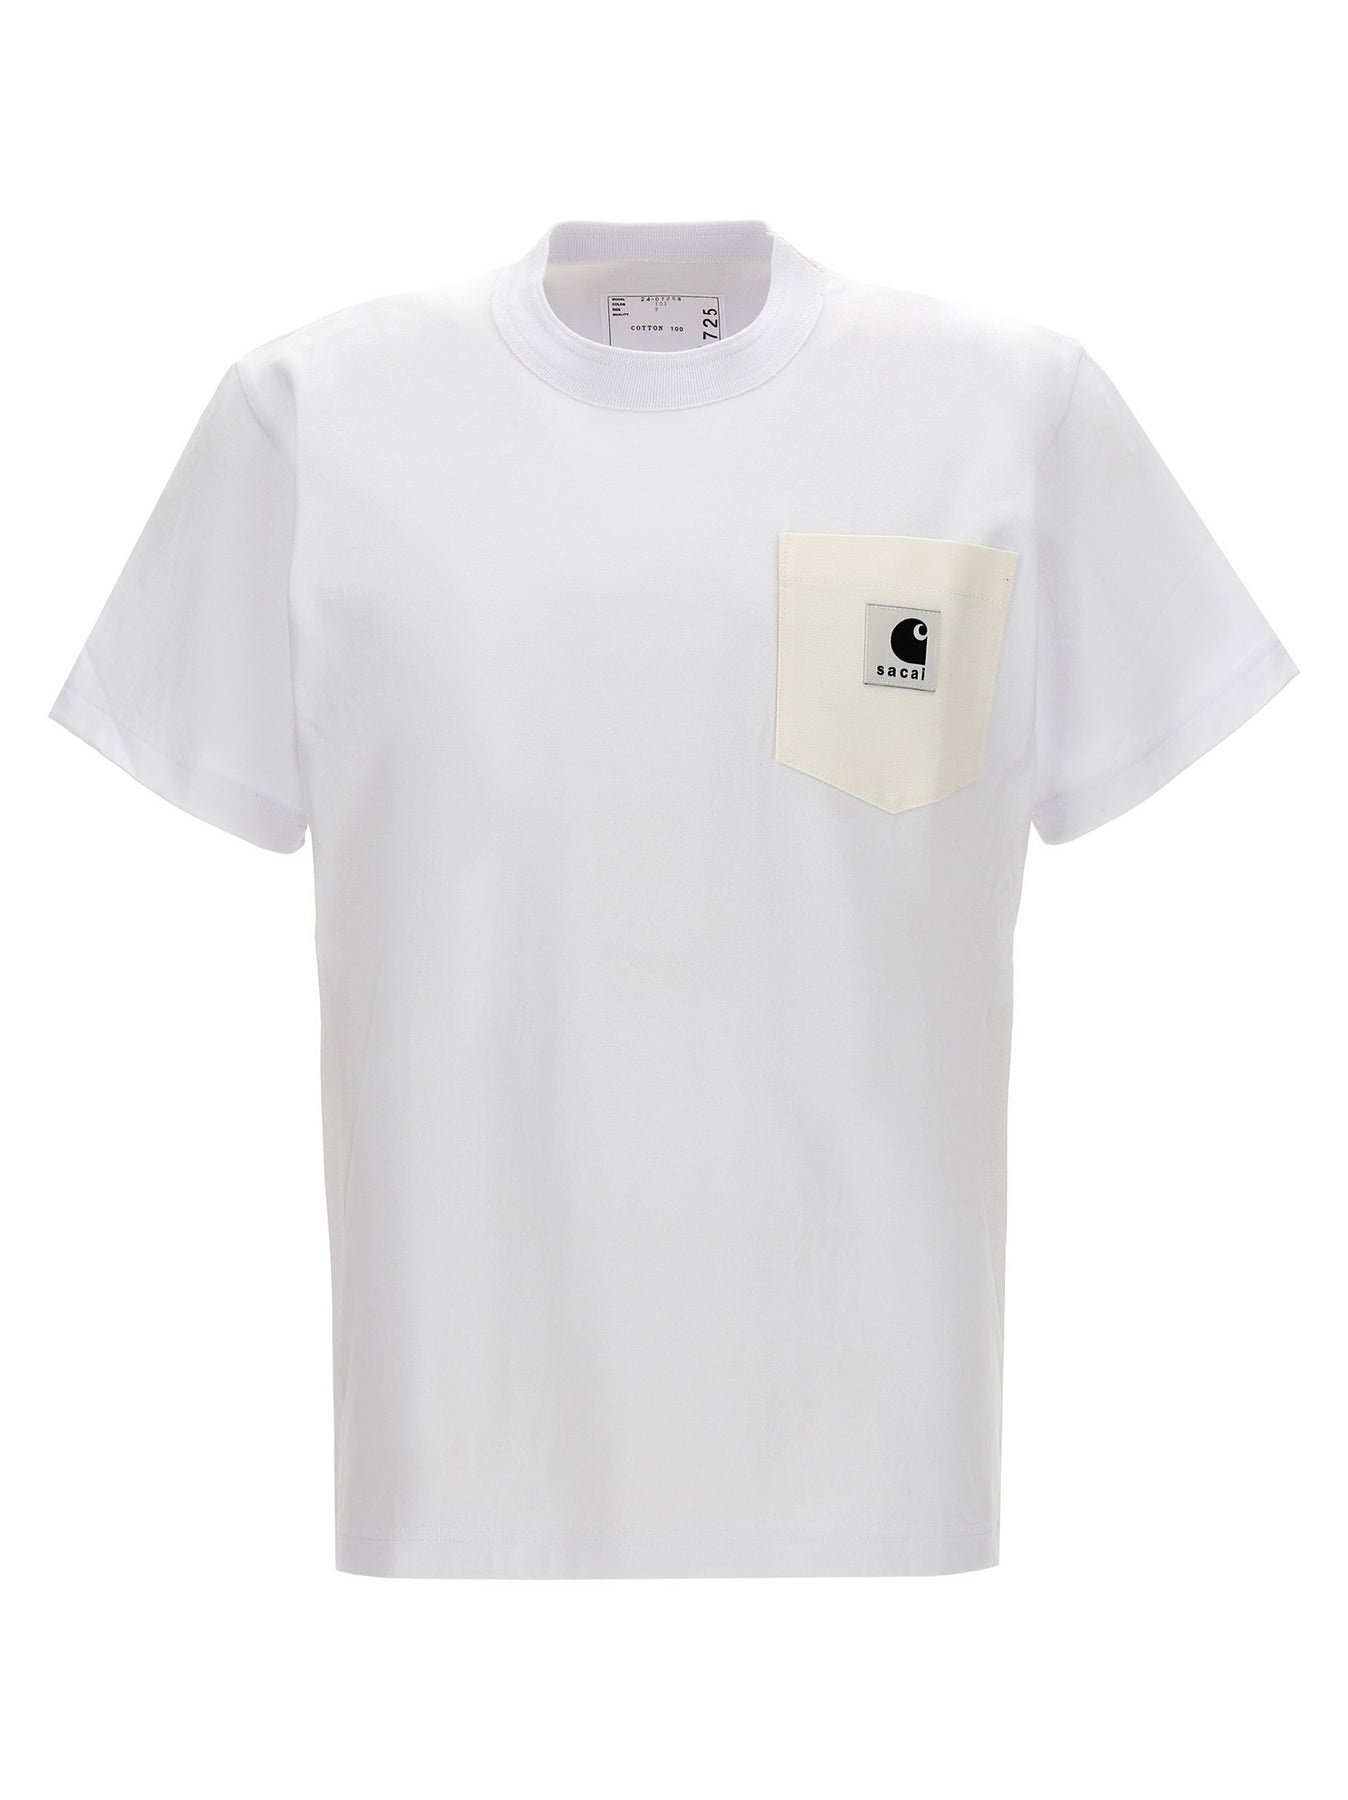 Sacai X Carhartt Wip T-Shirt White - 1